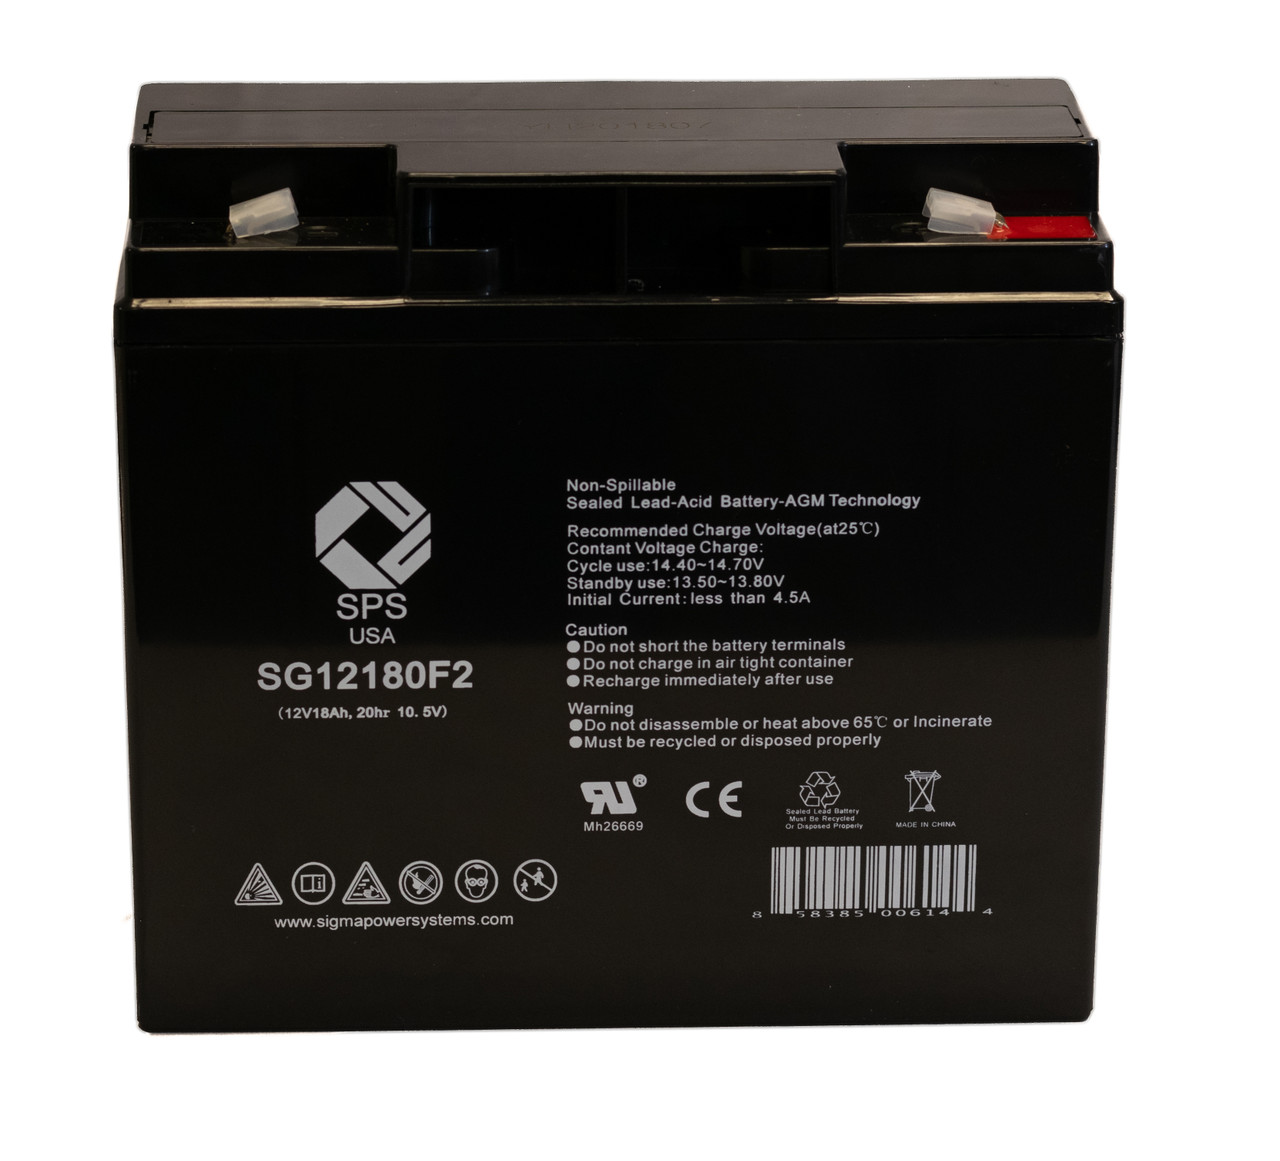 Raion Power RG12180T2 12V 18Ah Non-Spillable Battery for Silent Partner Scoop Rival